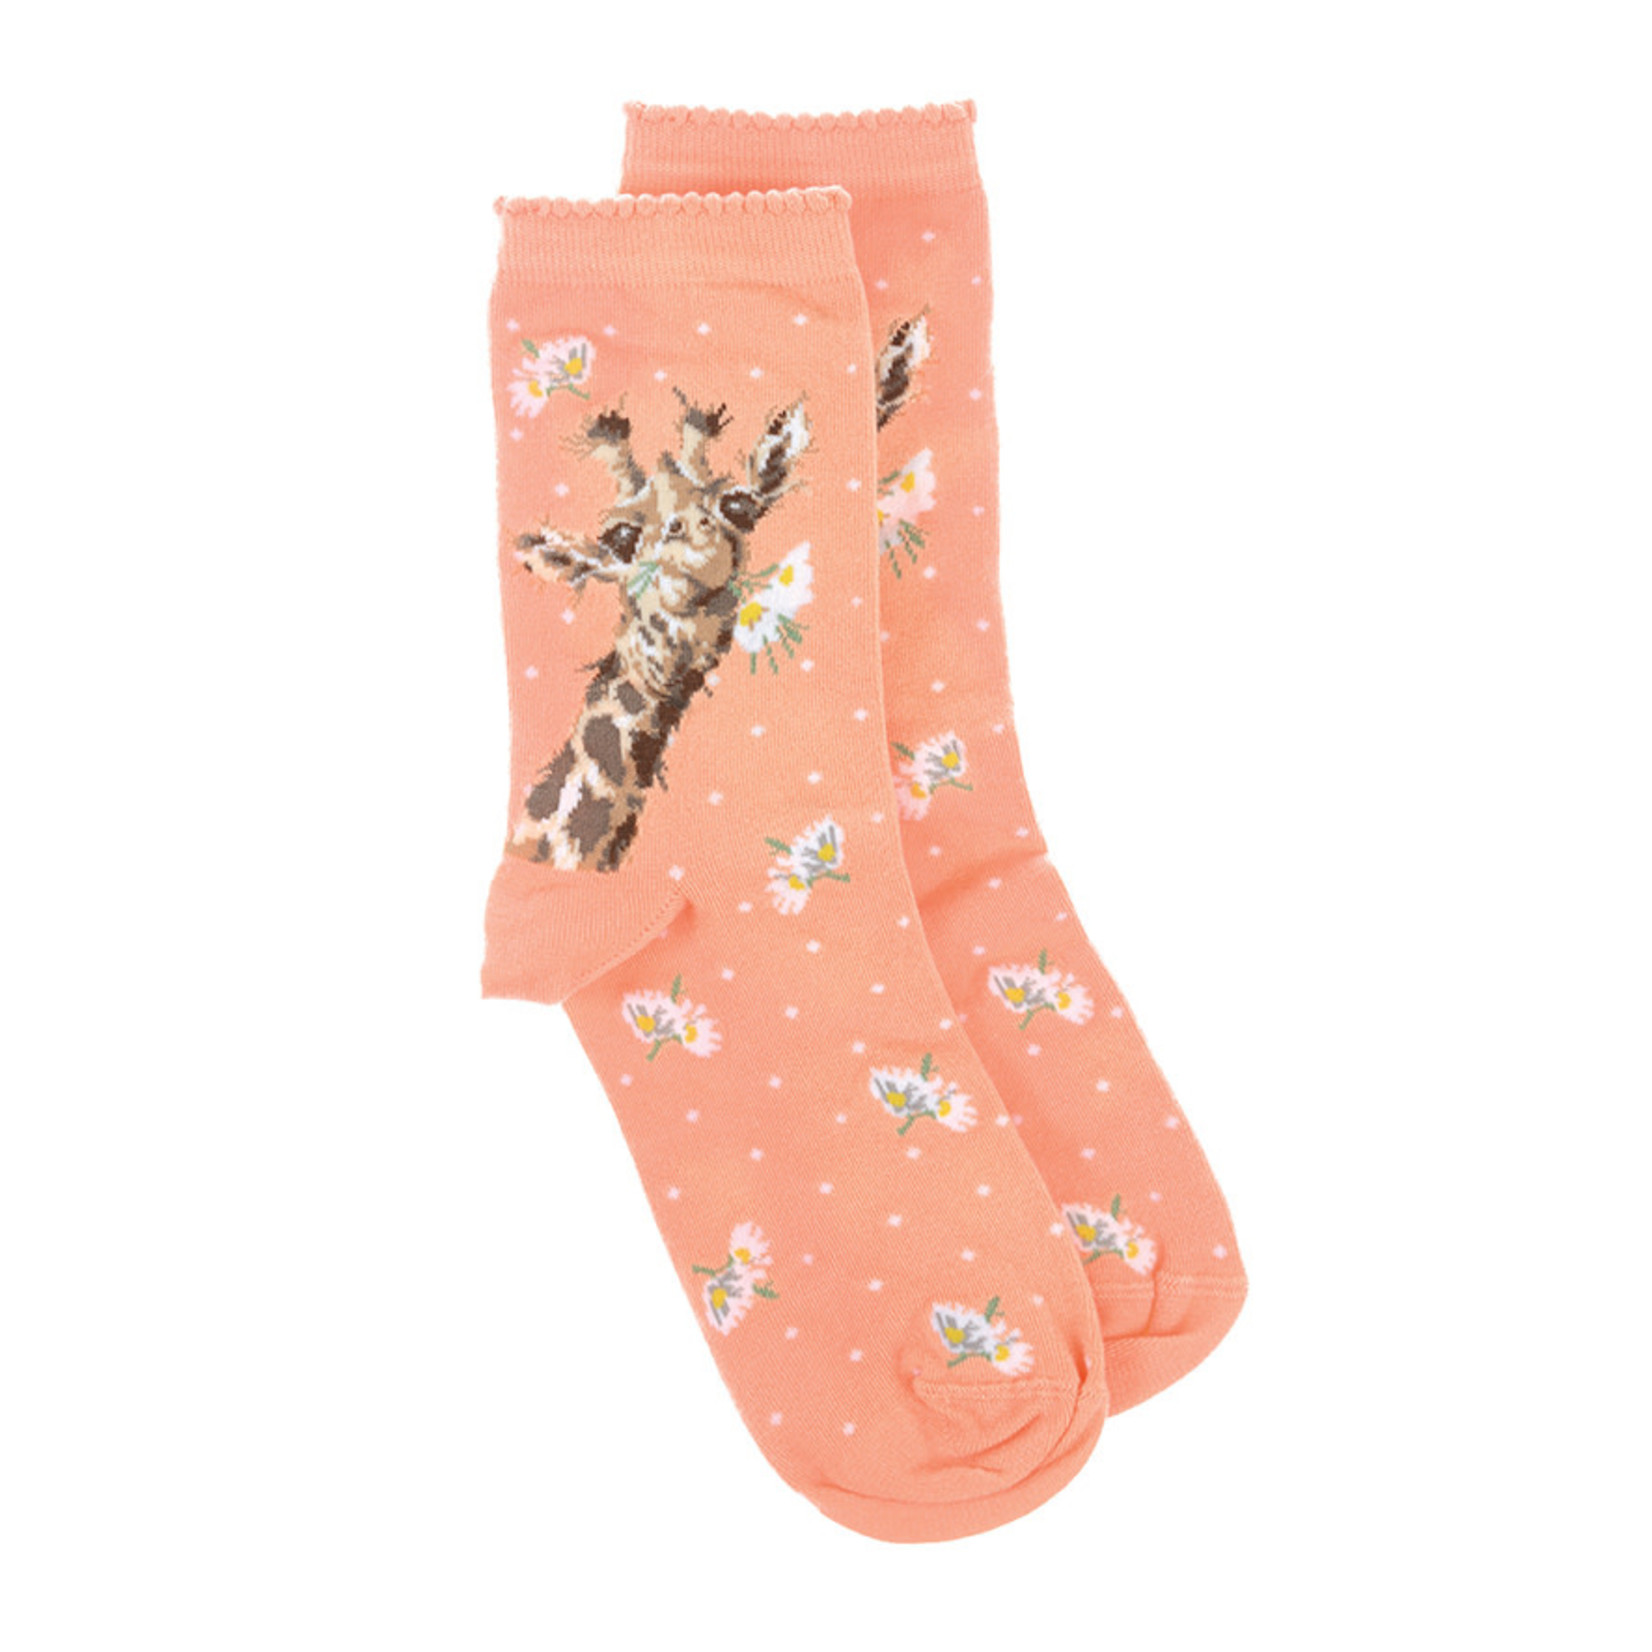 Wrendale Designs Socks - 'Flowers' Giraffe (SOCK006)